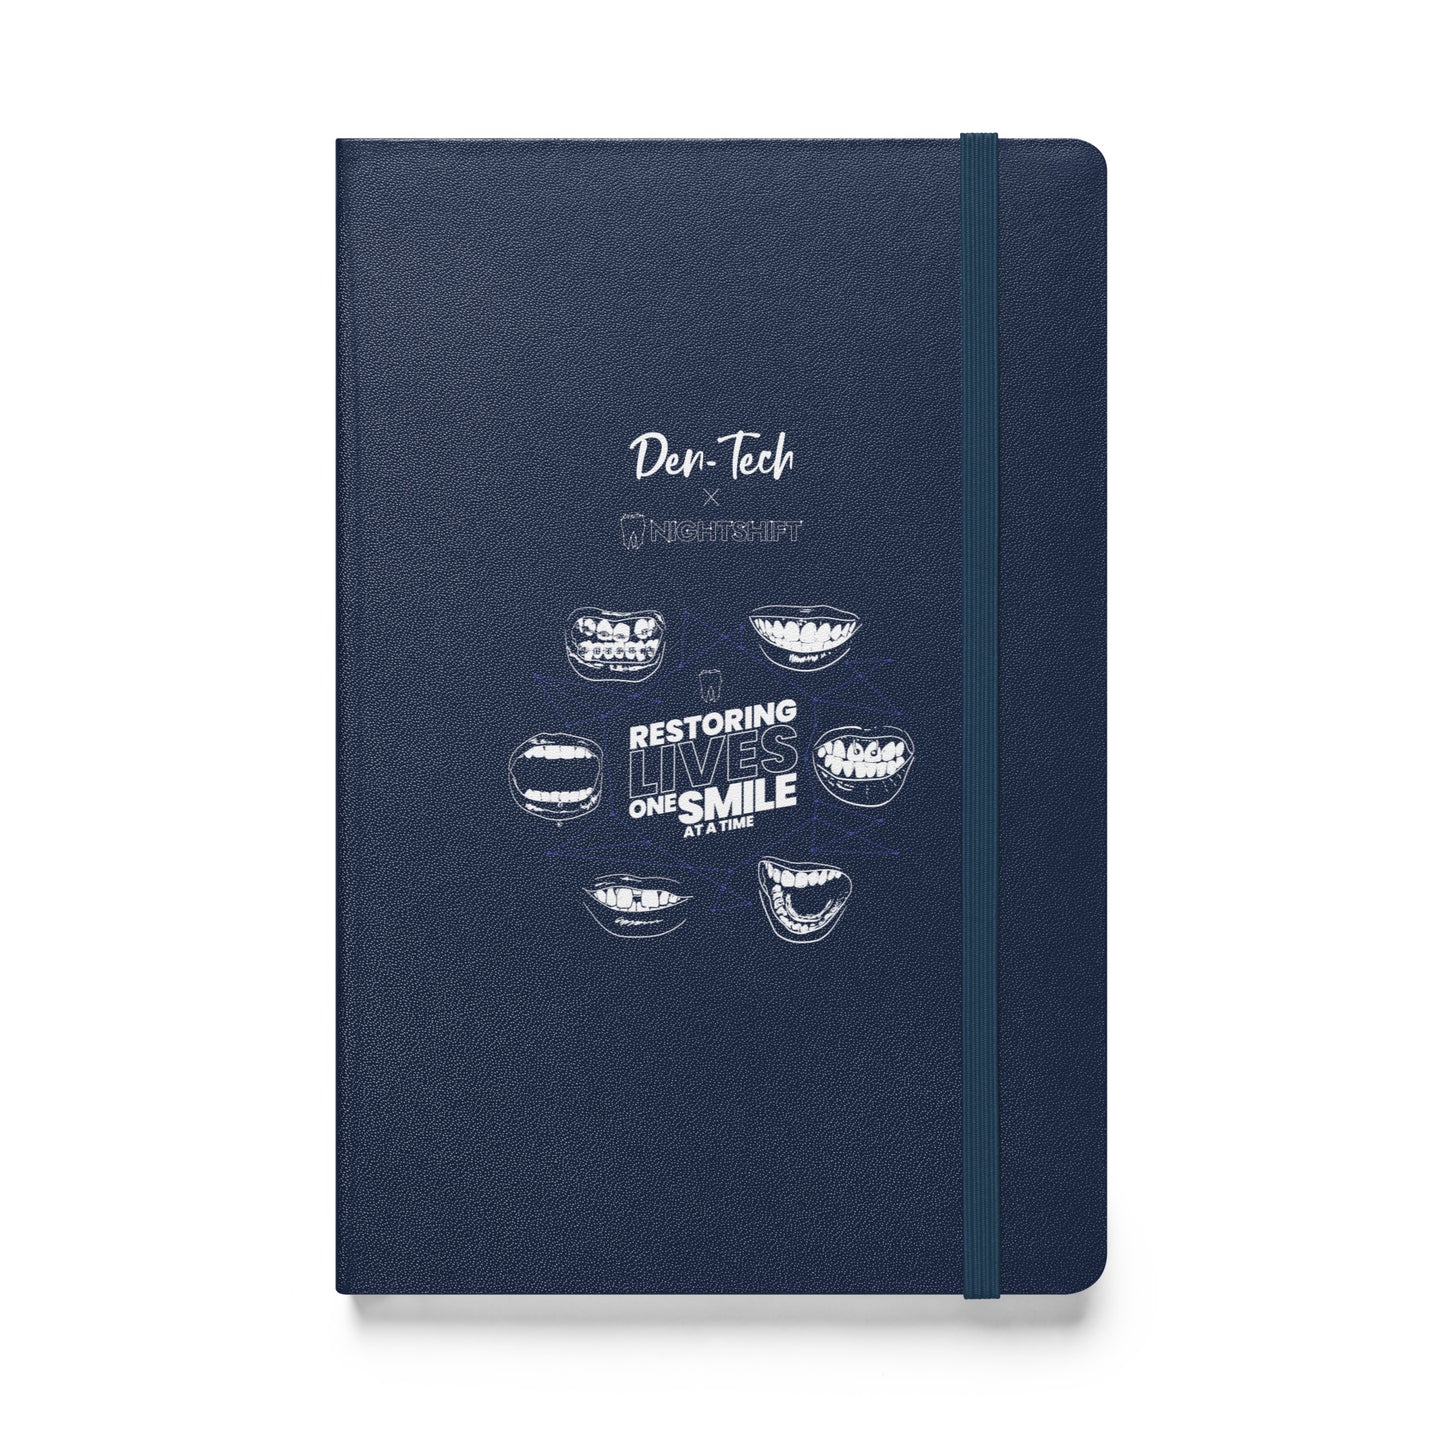 Nightshift Hardcover bound notebook